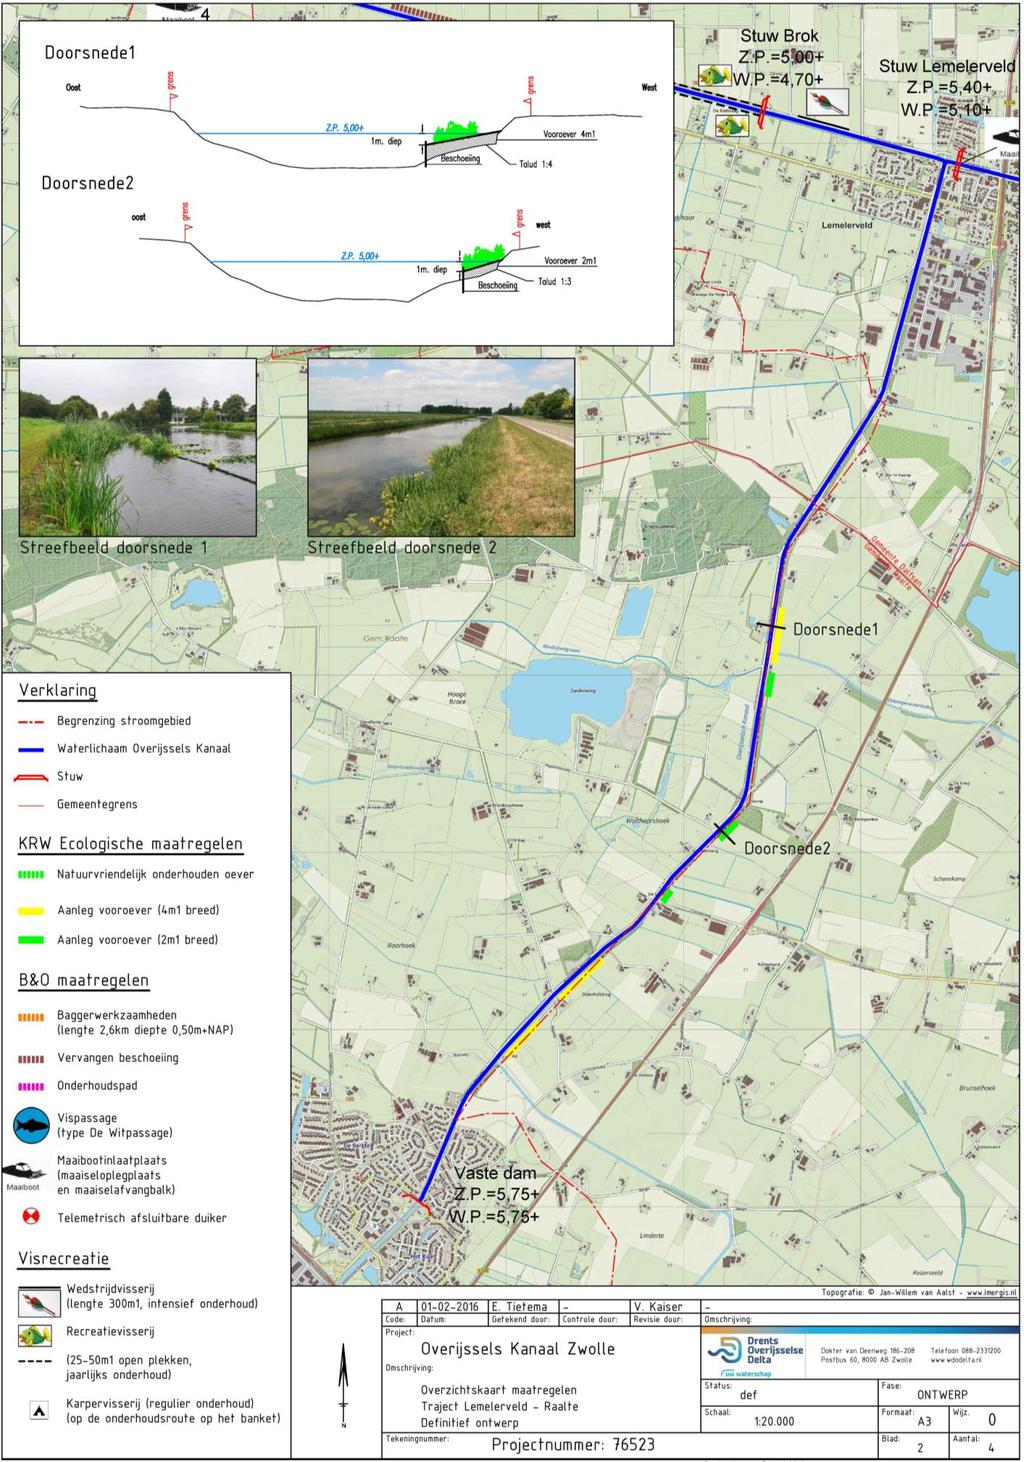 Bijlage 1b: Ontwerp Overijssels Kanaal Zwolle